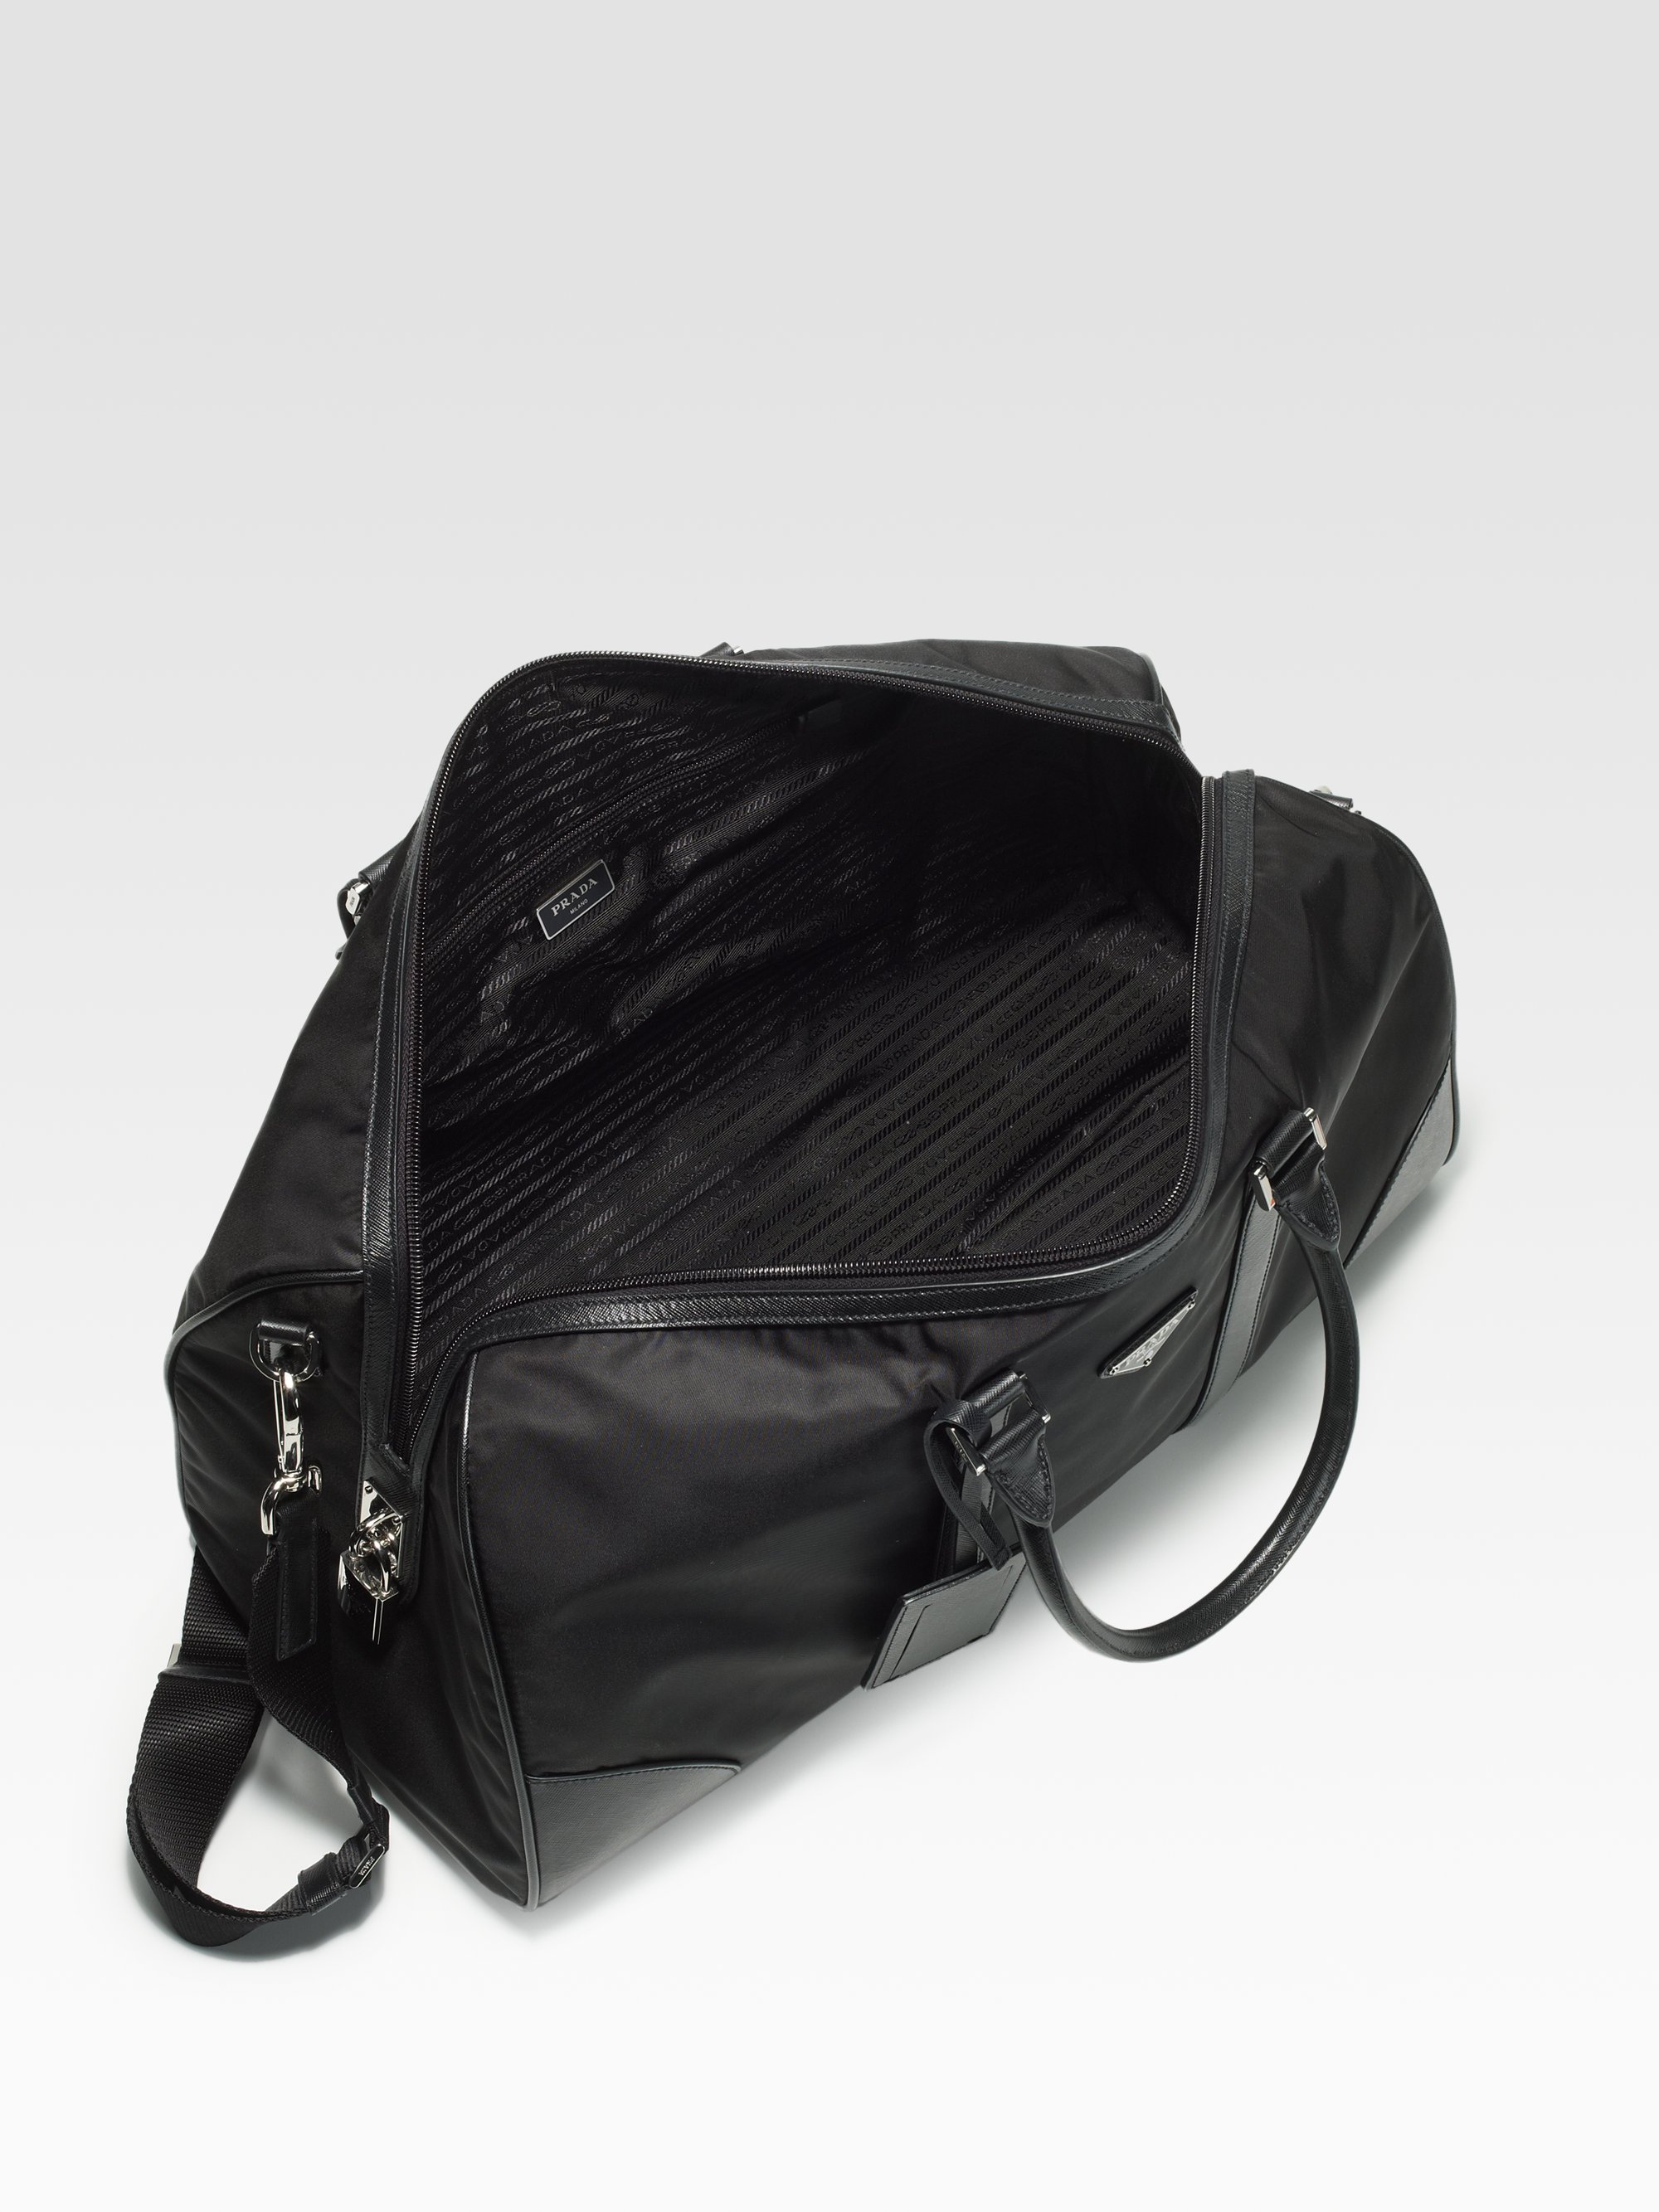 prada handbags for sale online - prada weekender black